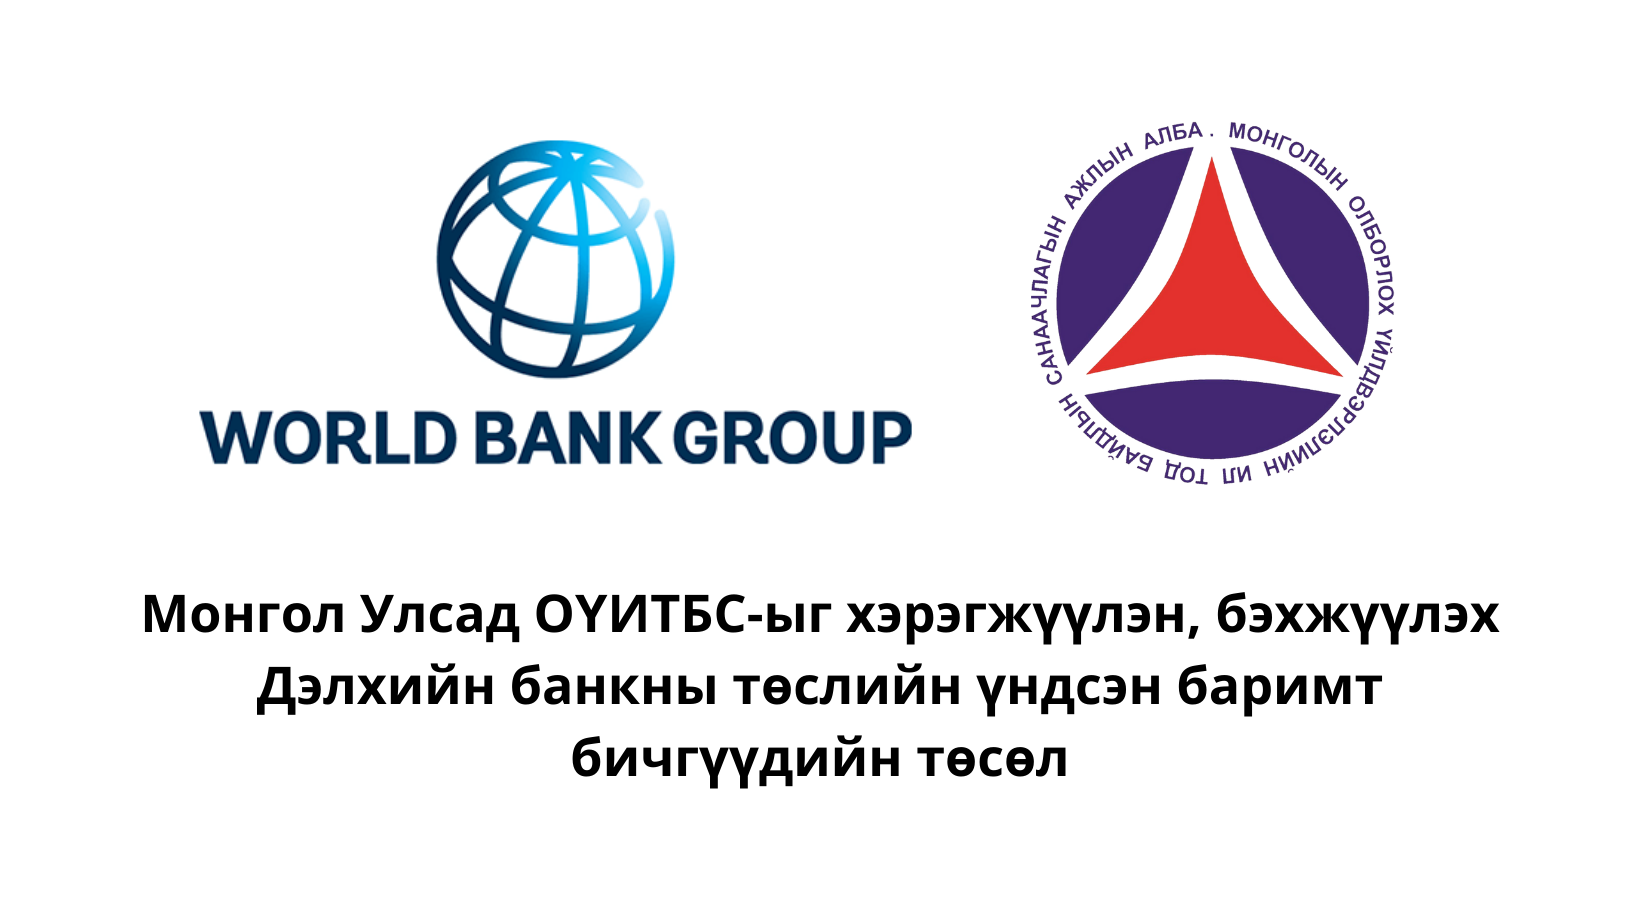 Монгол Улсад ОҮИТБС-ыг хэрэгжүүлэн, бэхжүүлэх Дэлхийн банкны төслийн үндсэн баримт бичгүүдийн төсөлтэй танилцаж, саналаа өгнө үү